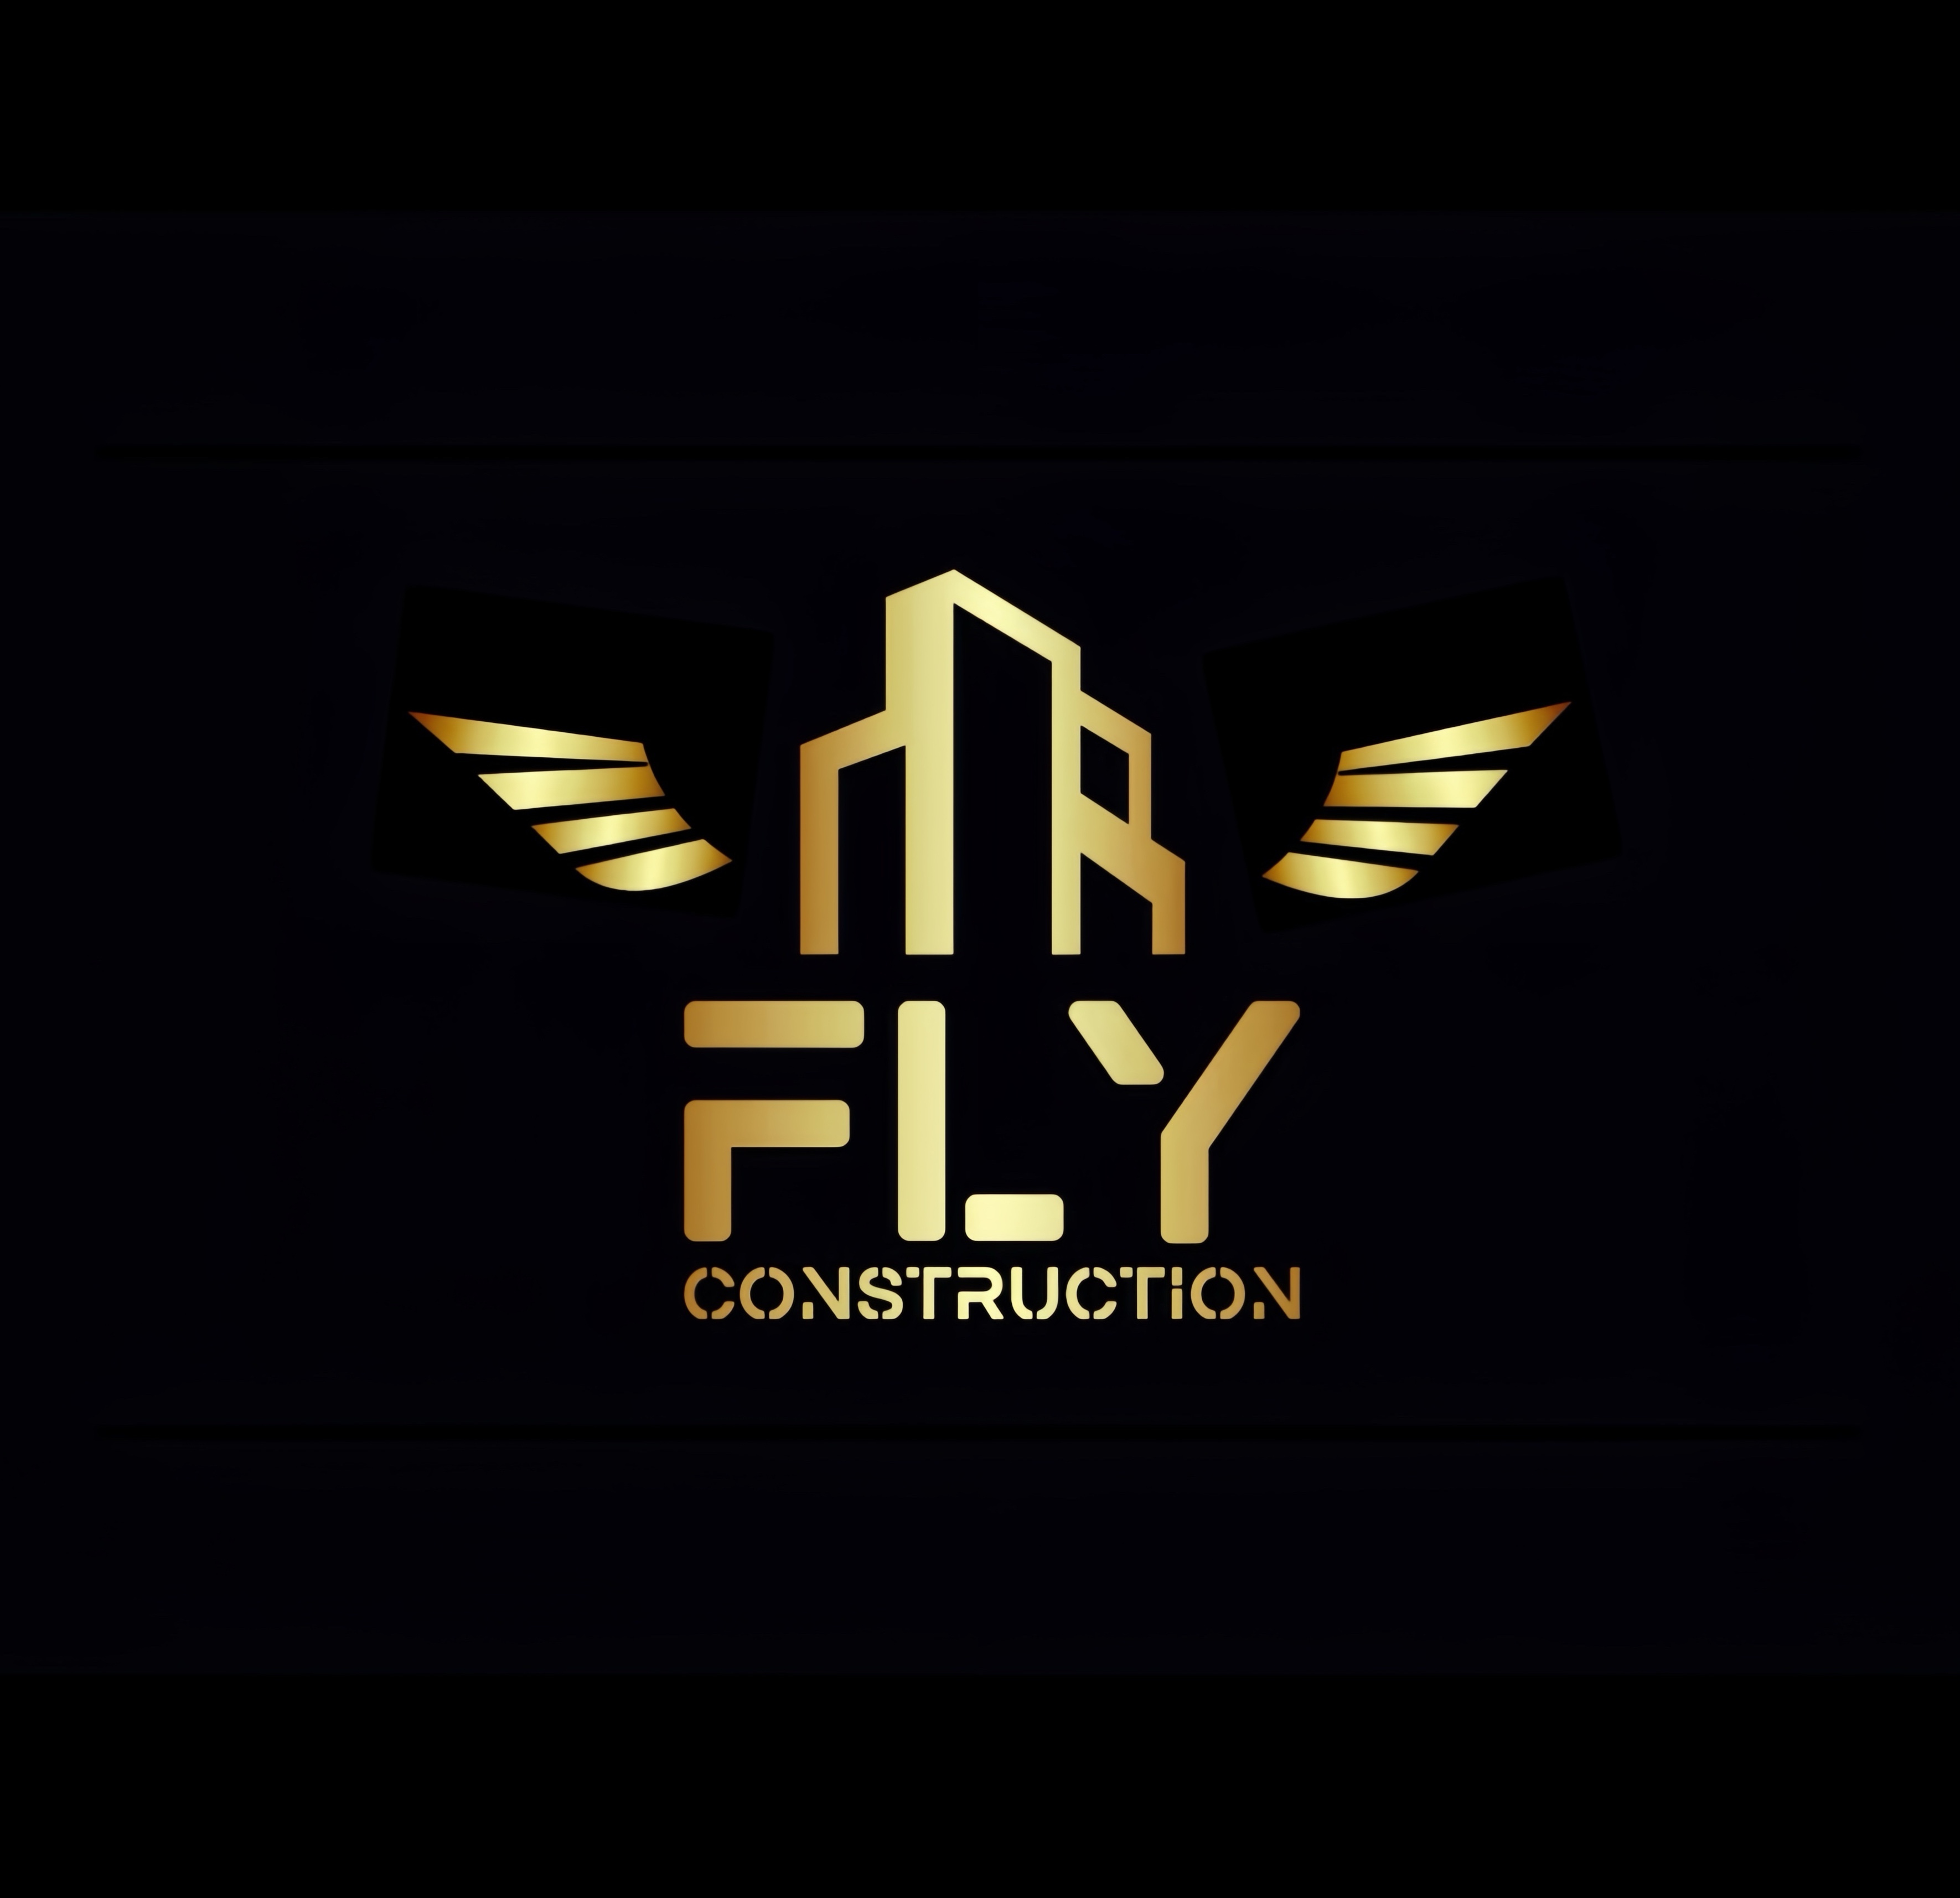 FLY CONSTRUCTION's logo